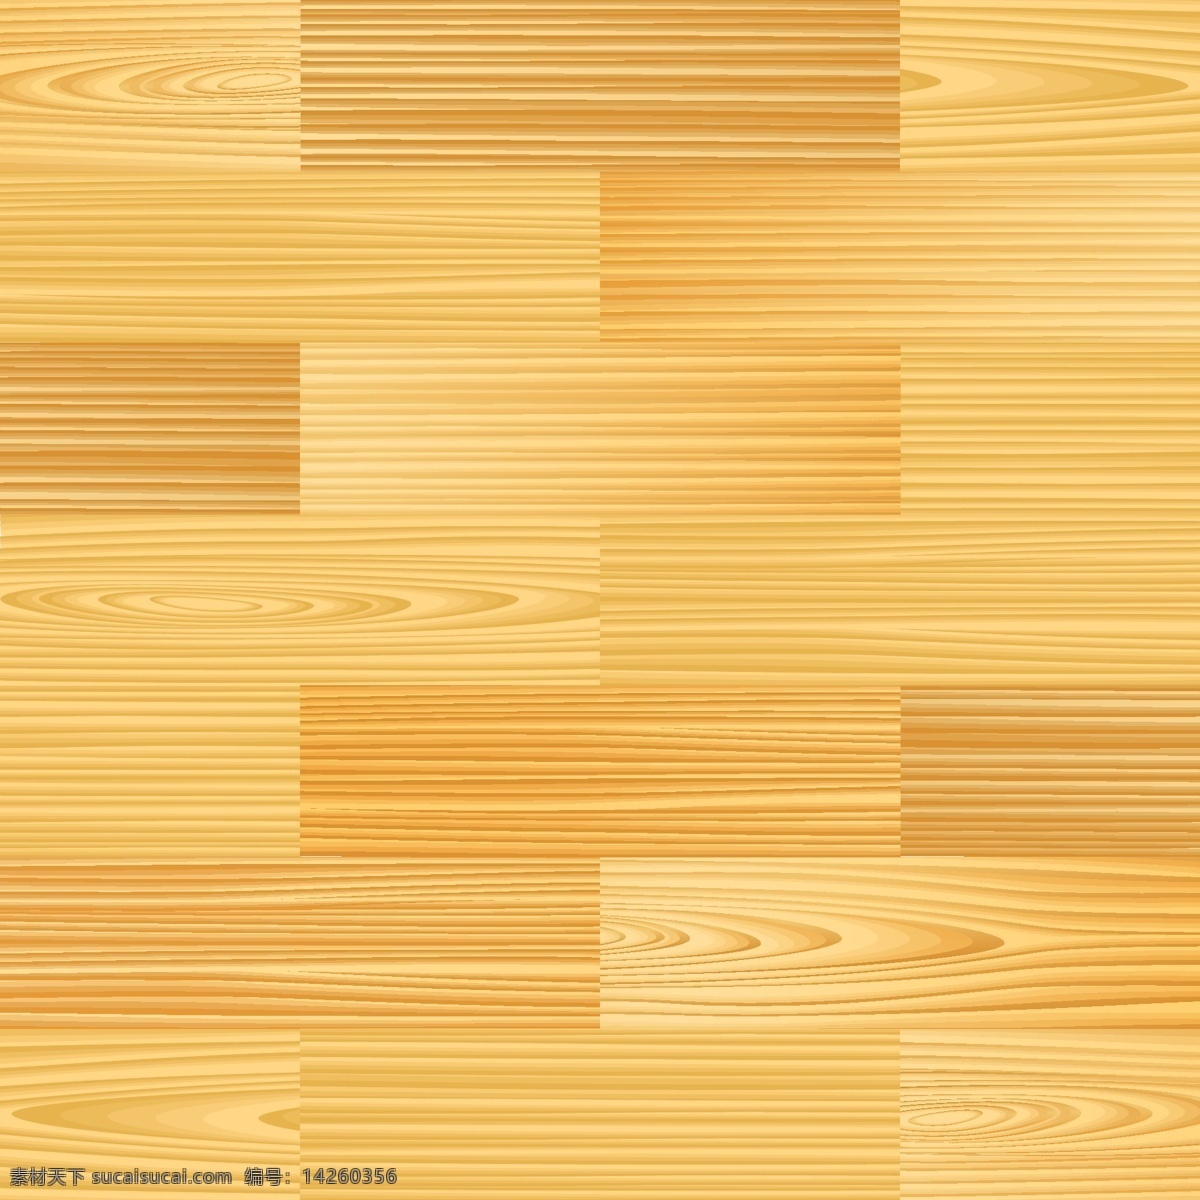 木板 木地板 木头 地板 木头背景 木质背景 木头素材 木头纹理 木质设计 木板背景 时尚背景 绚丽背景 背景素材 背景图案 矢量背景 生活用品 生活百科